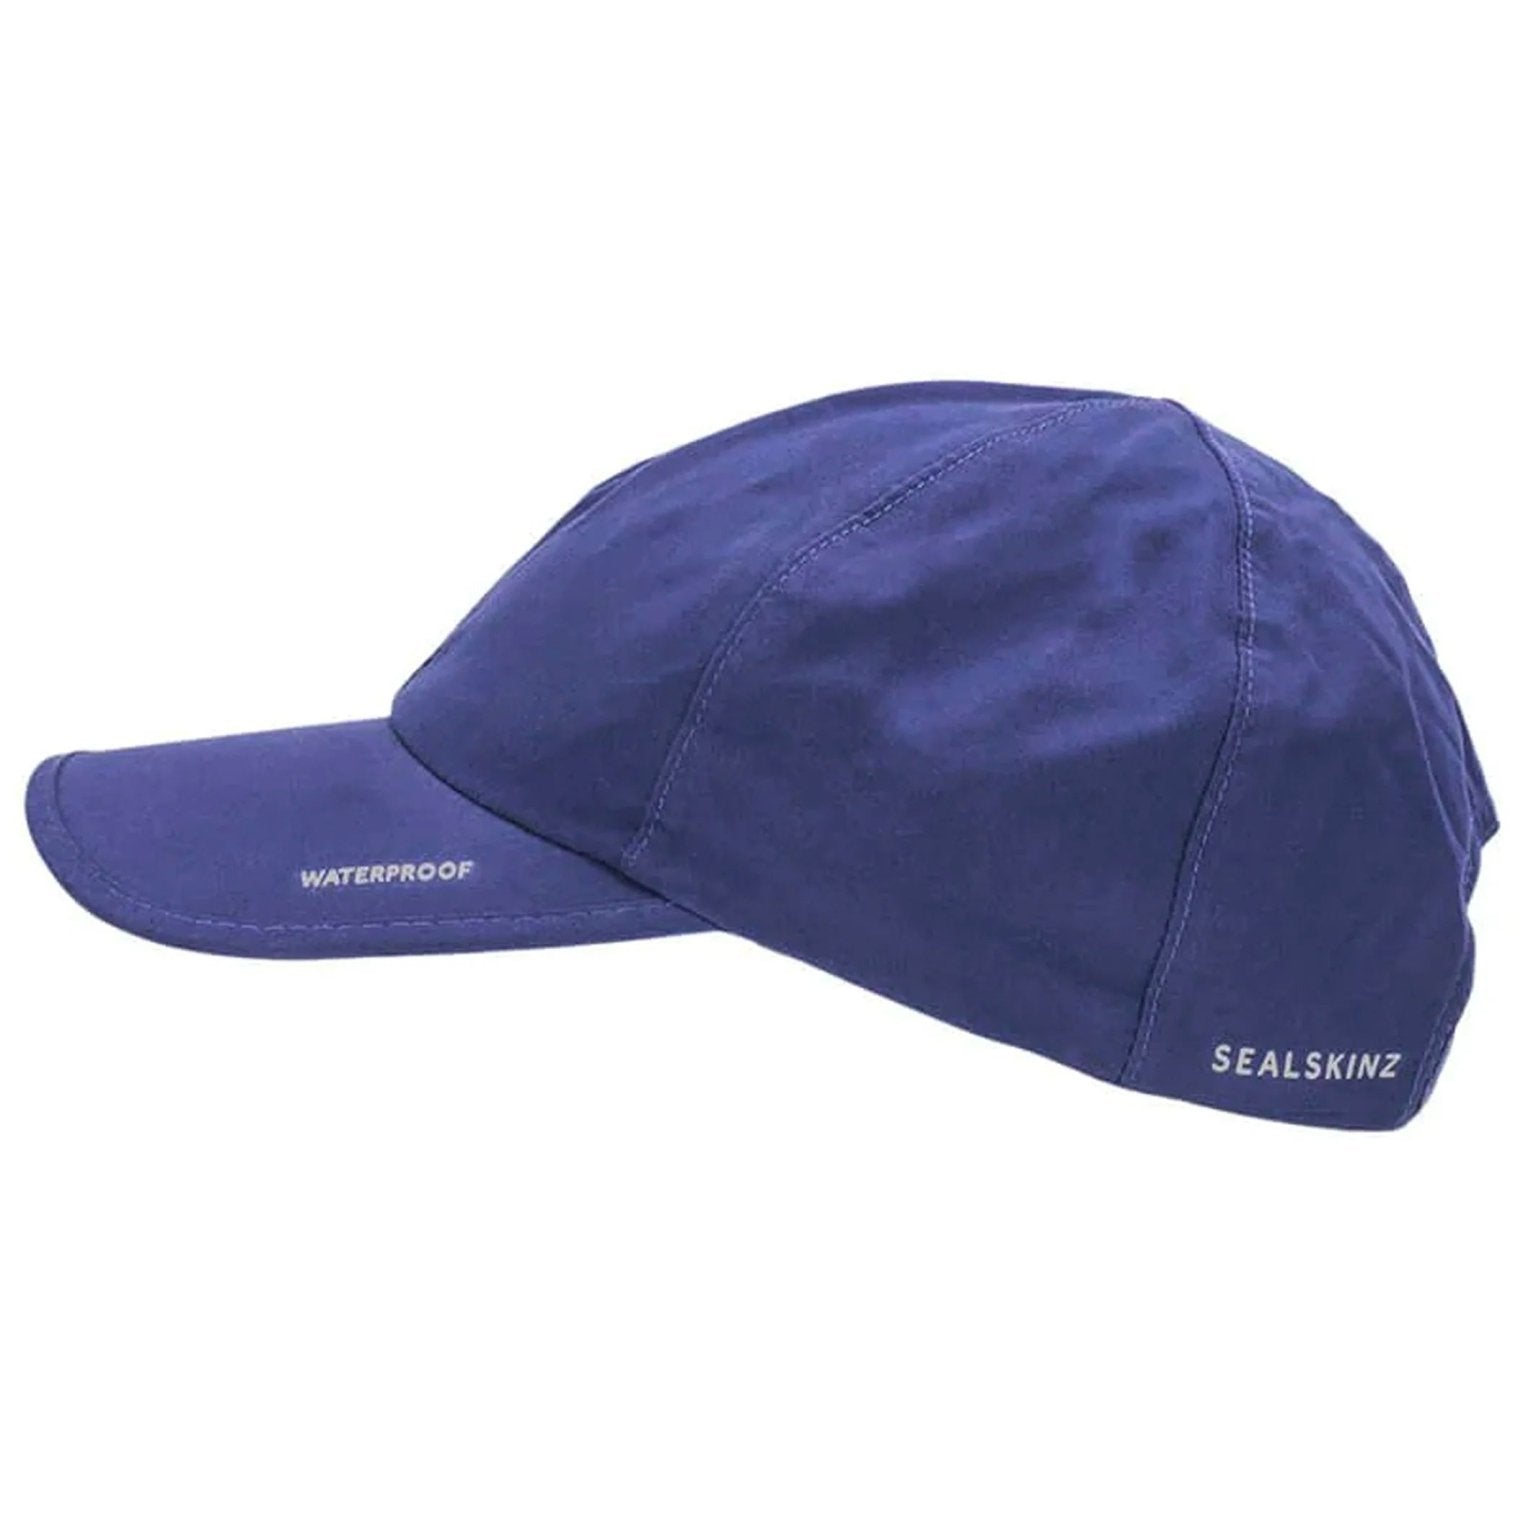 4elementsclothingSealSkinzSealskinz - Waterproof Windproof Hat / Peaked Cap / Baseball cap - LanghamHats5055754430417